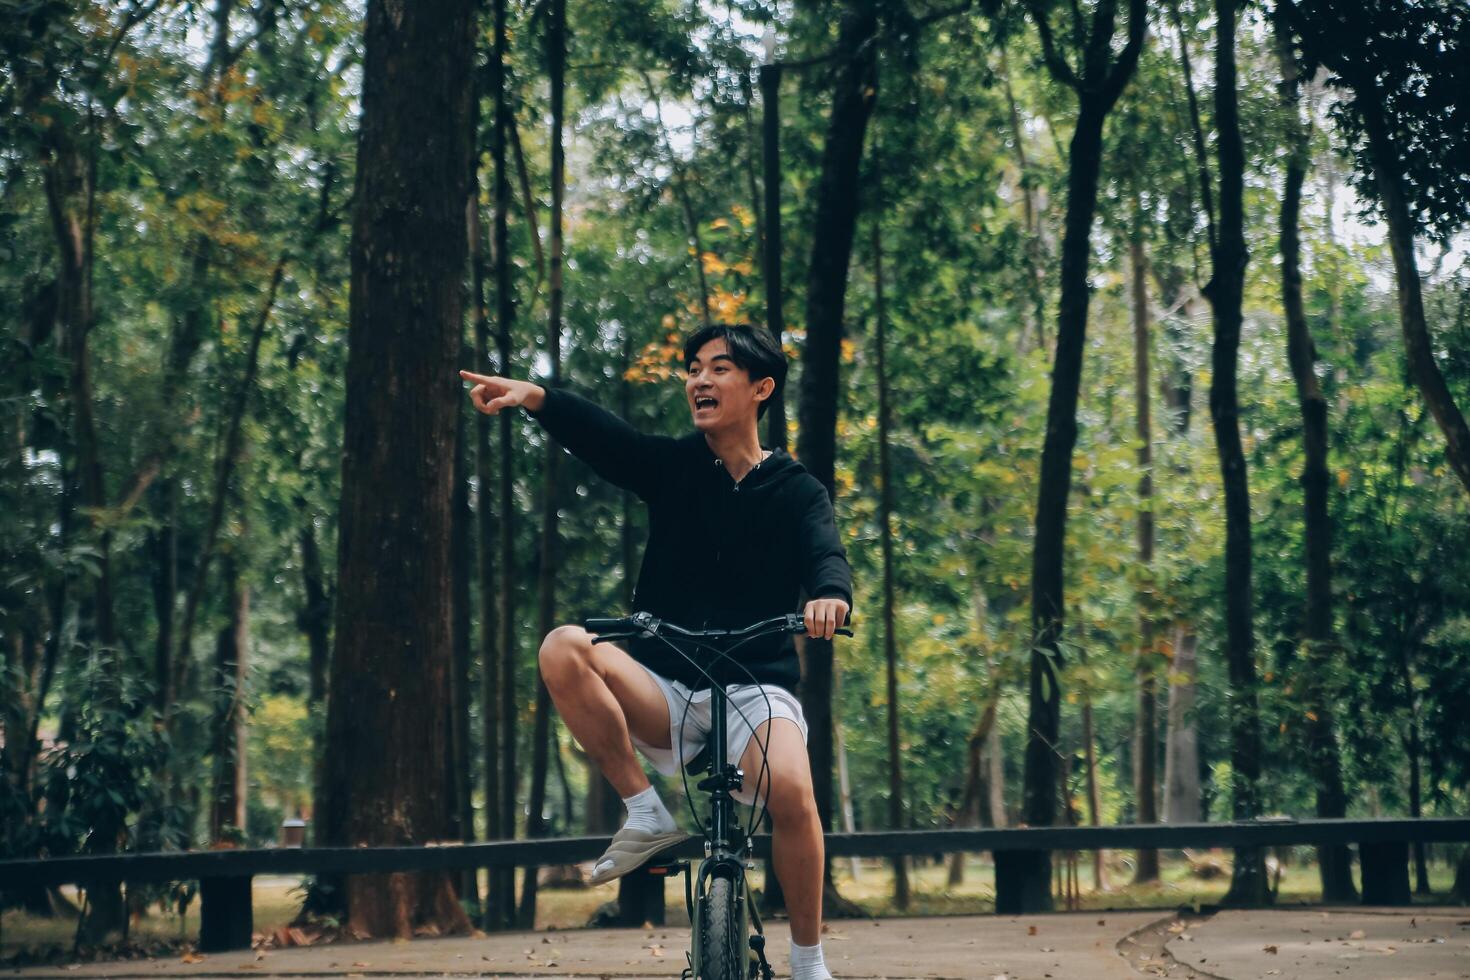 hermoso contento joven hombre con bicicleta en un ciudad calle, activo estilo de vida, personas concepto foto